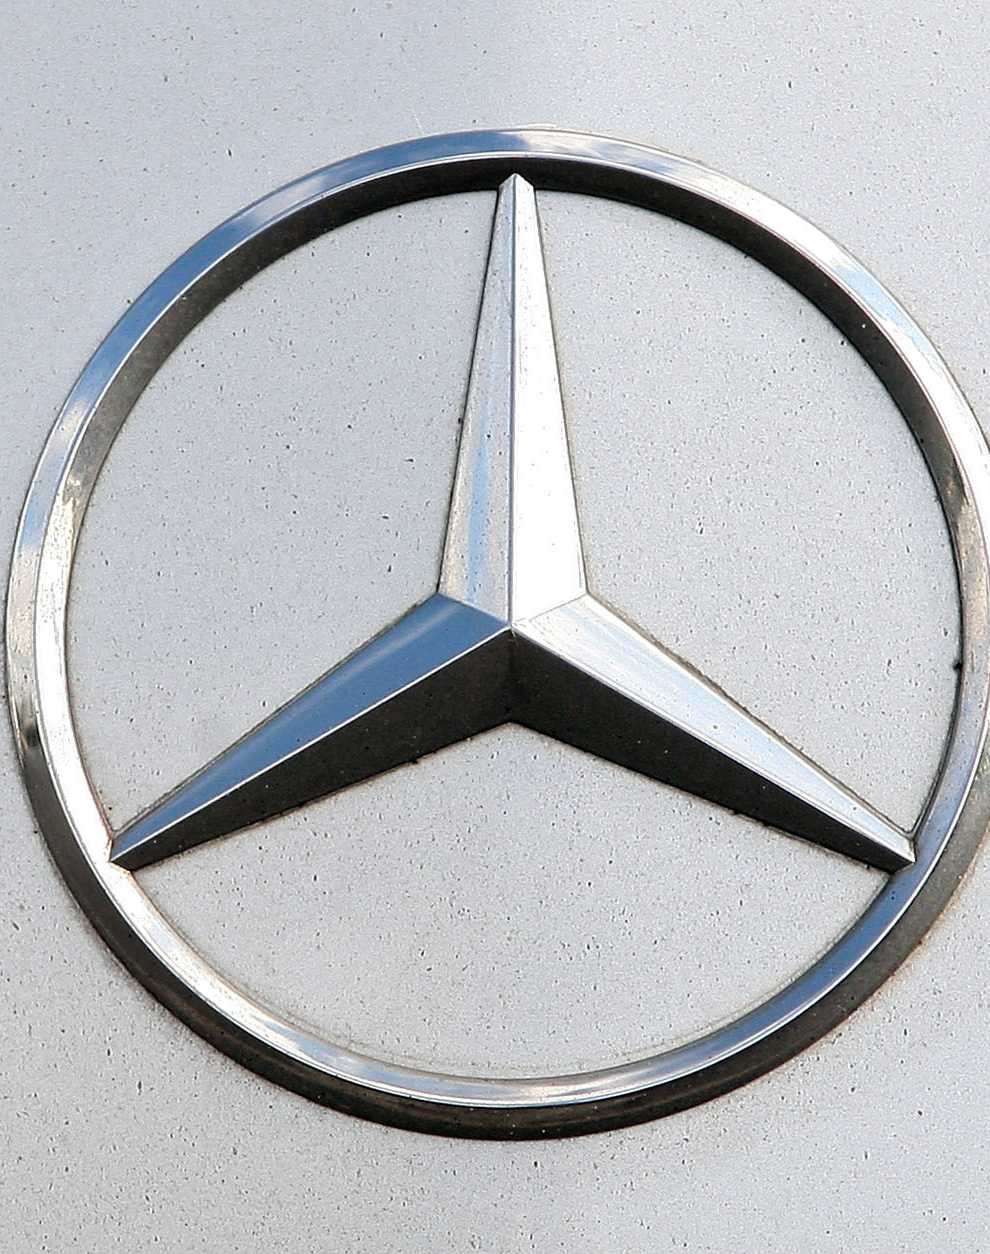 A Mercedes logo